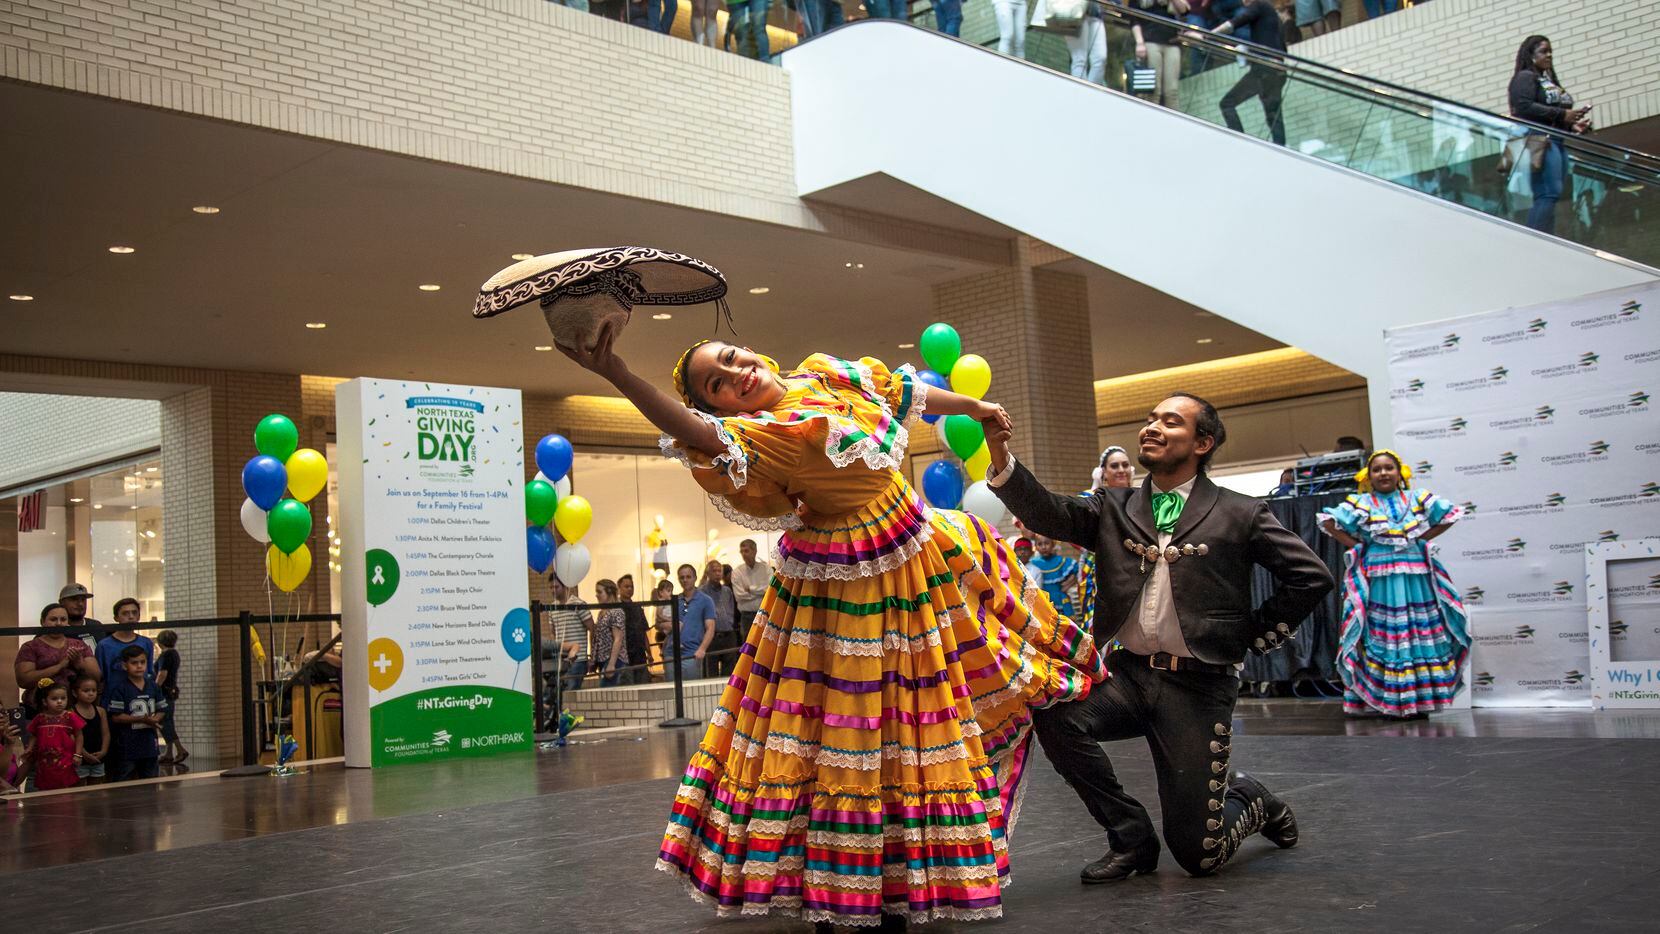 El ballet folklórico Anita N. Martinez es una de las compañías de danza más representativas de los bailes regionales mexicanos en los Estados Unidos.